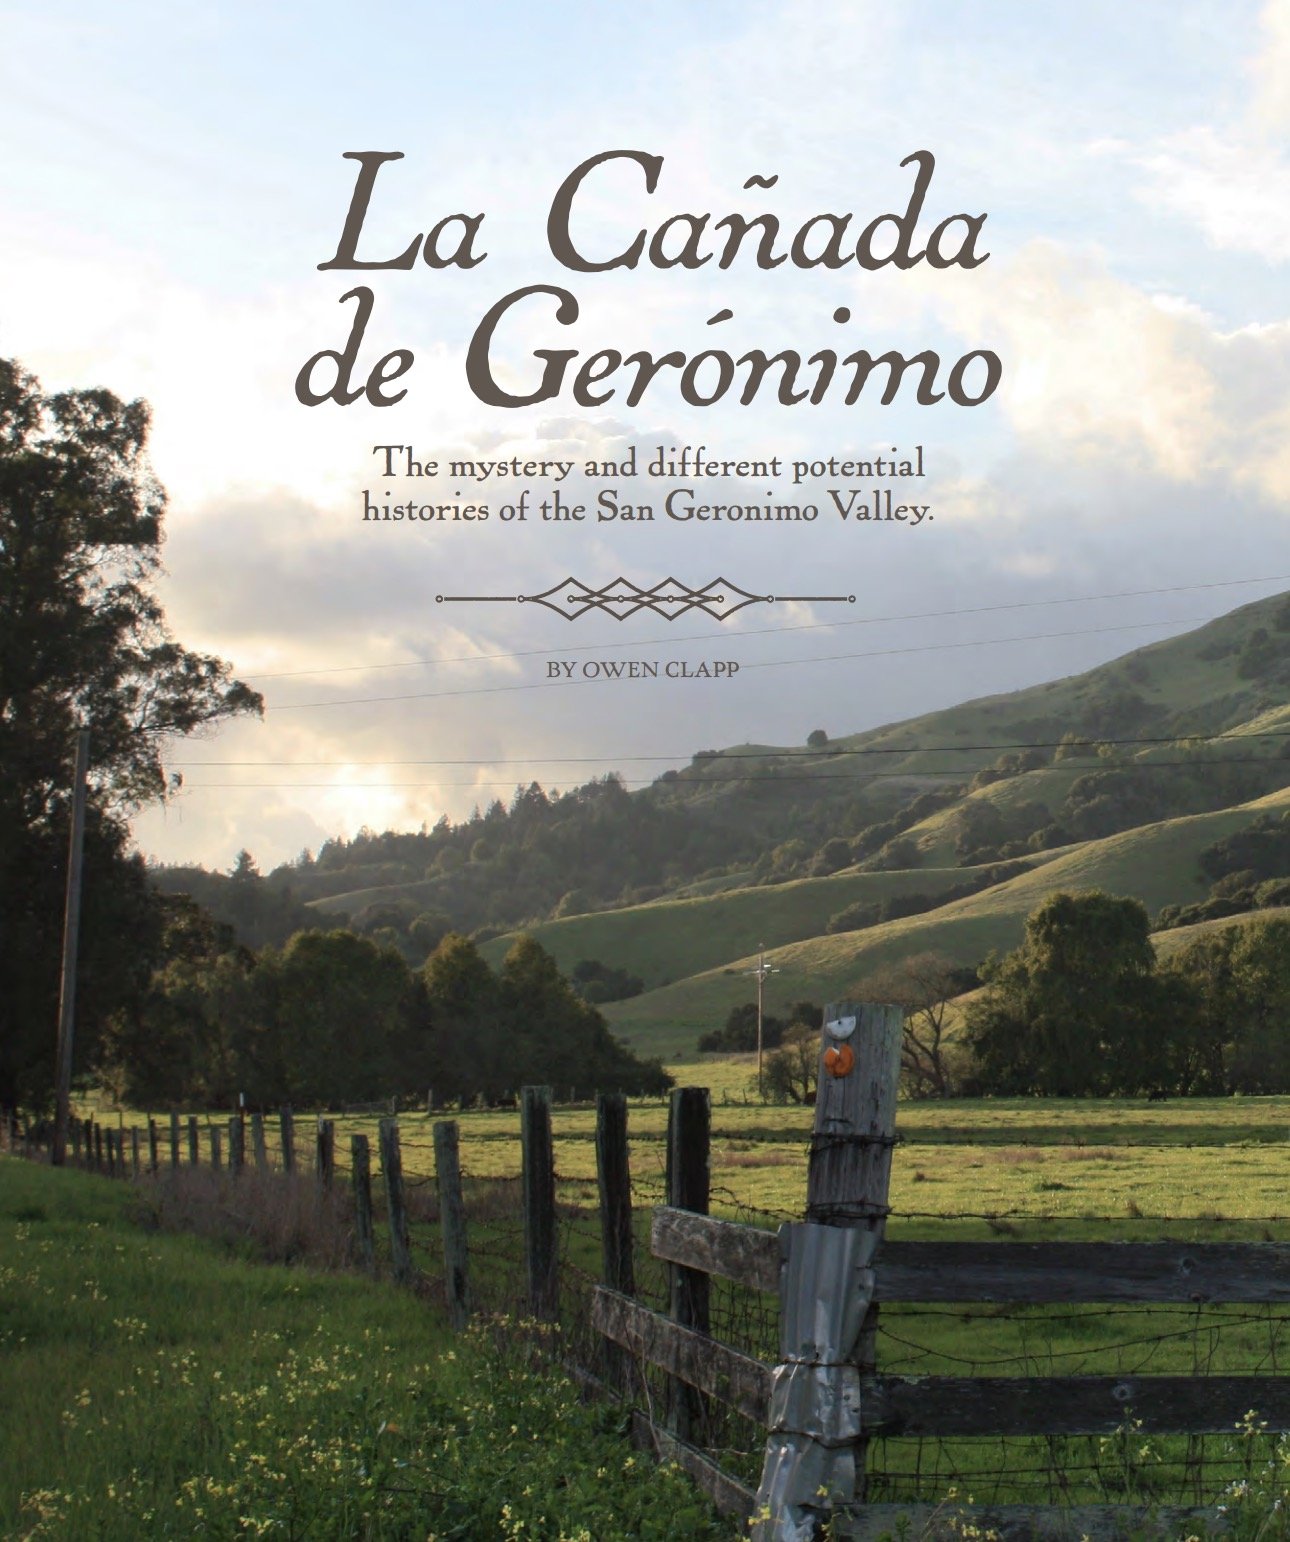 Marin Magazine - "La Cañada de Gerónimo"